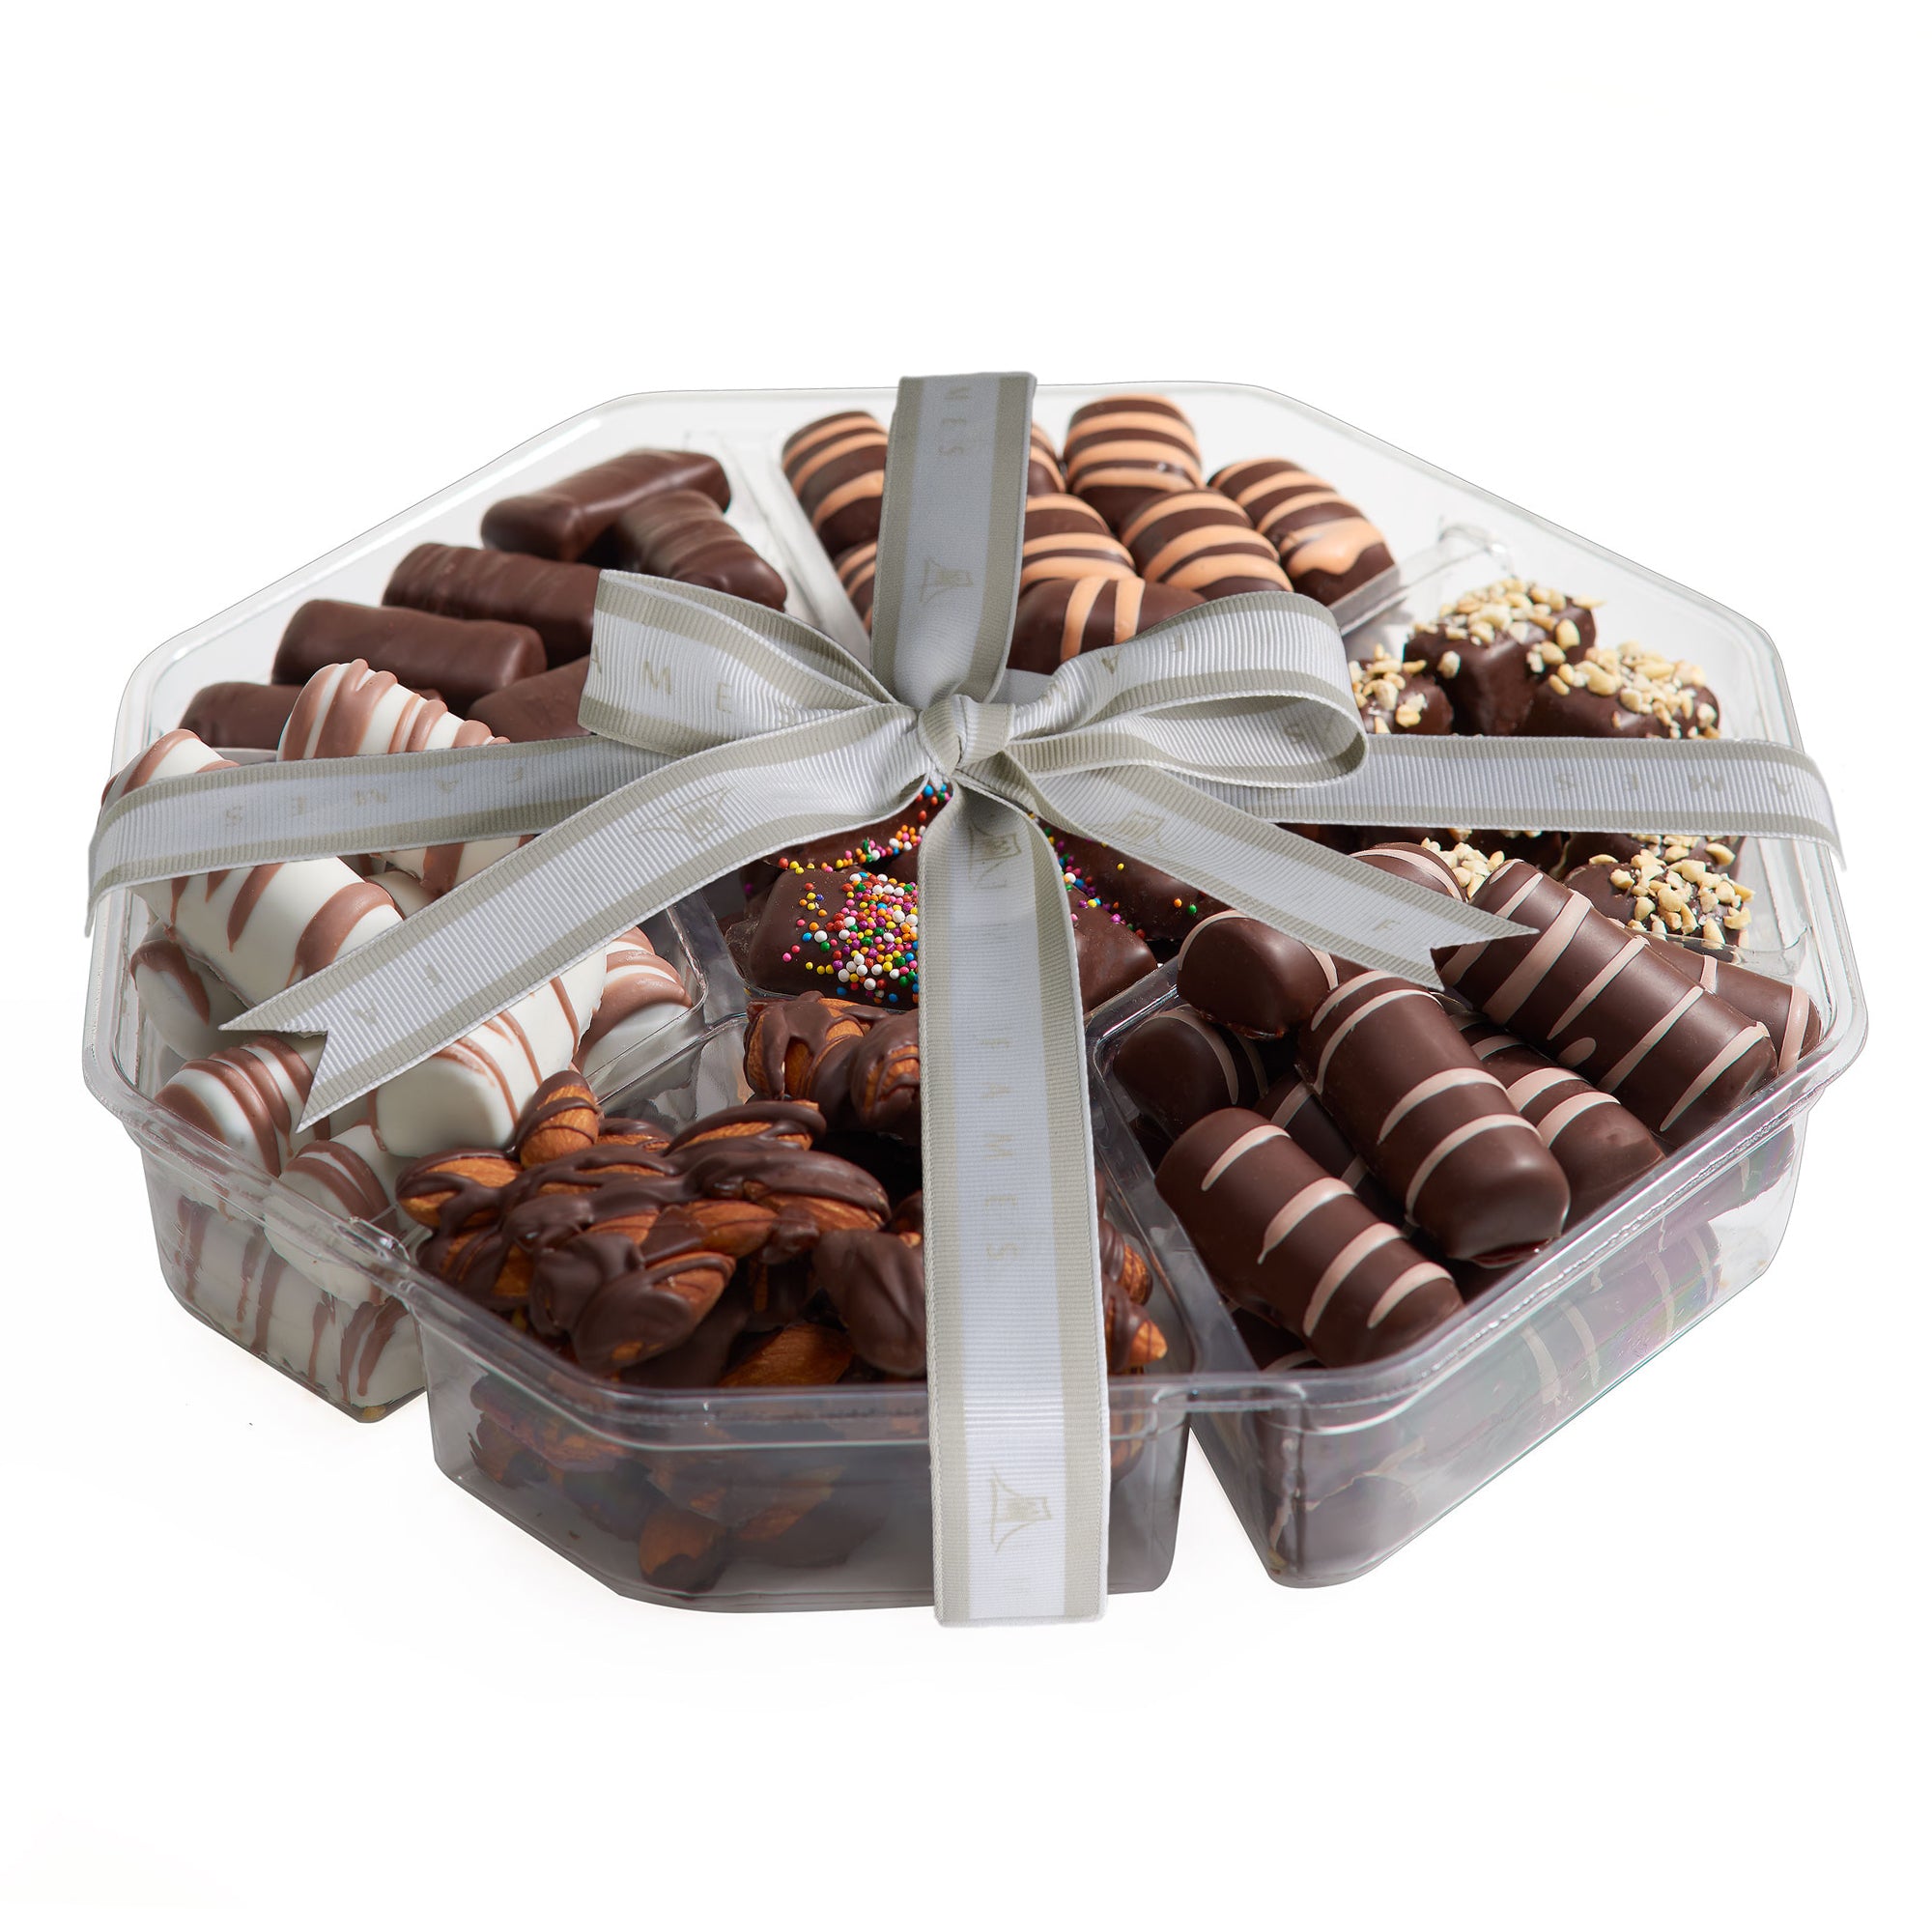 Kosher Chocolate Assortment - Great Chocolate Gift, Kosher, Dairy Free.  Fames Chocolate   